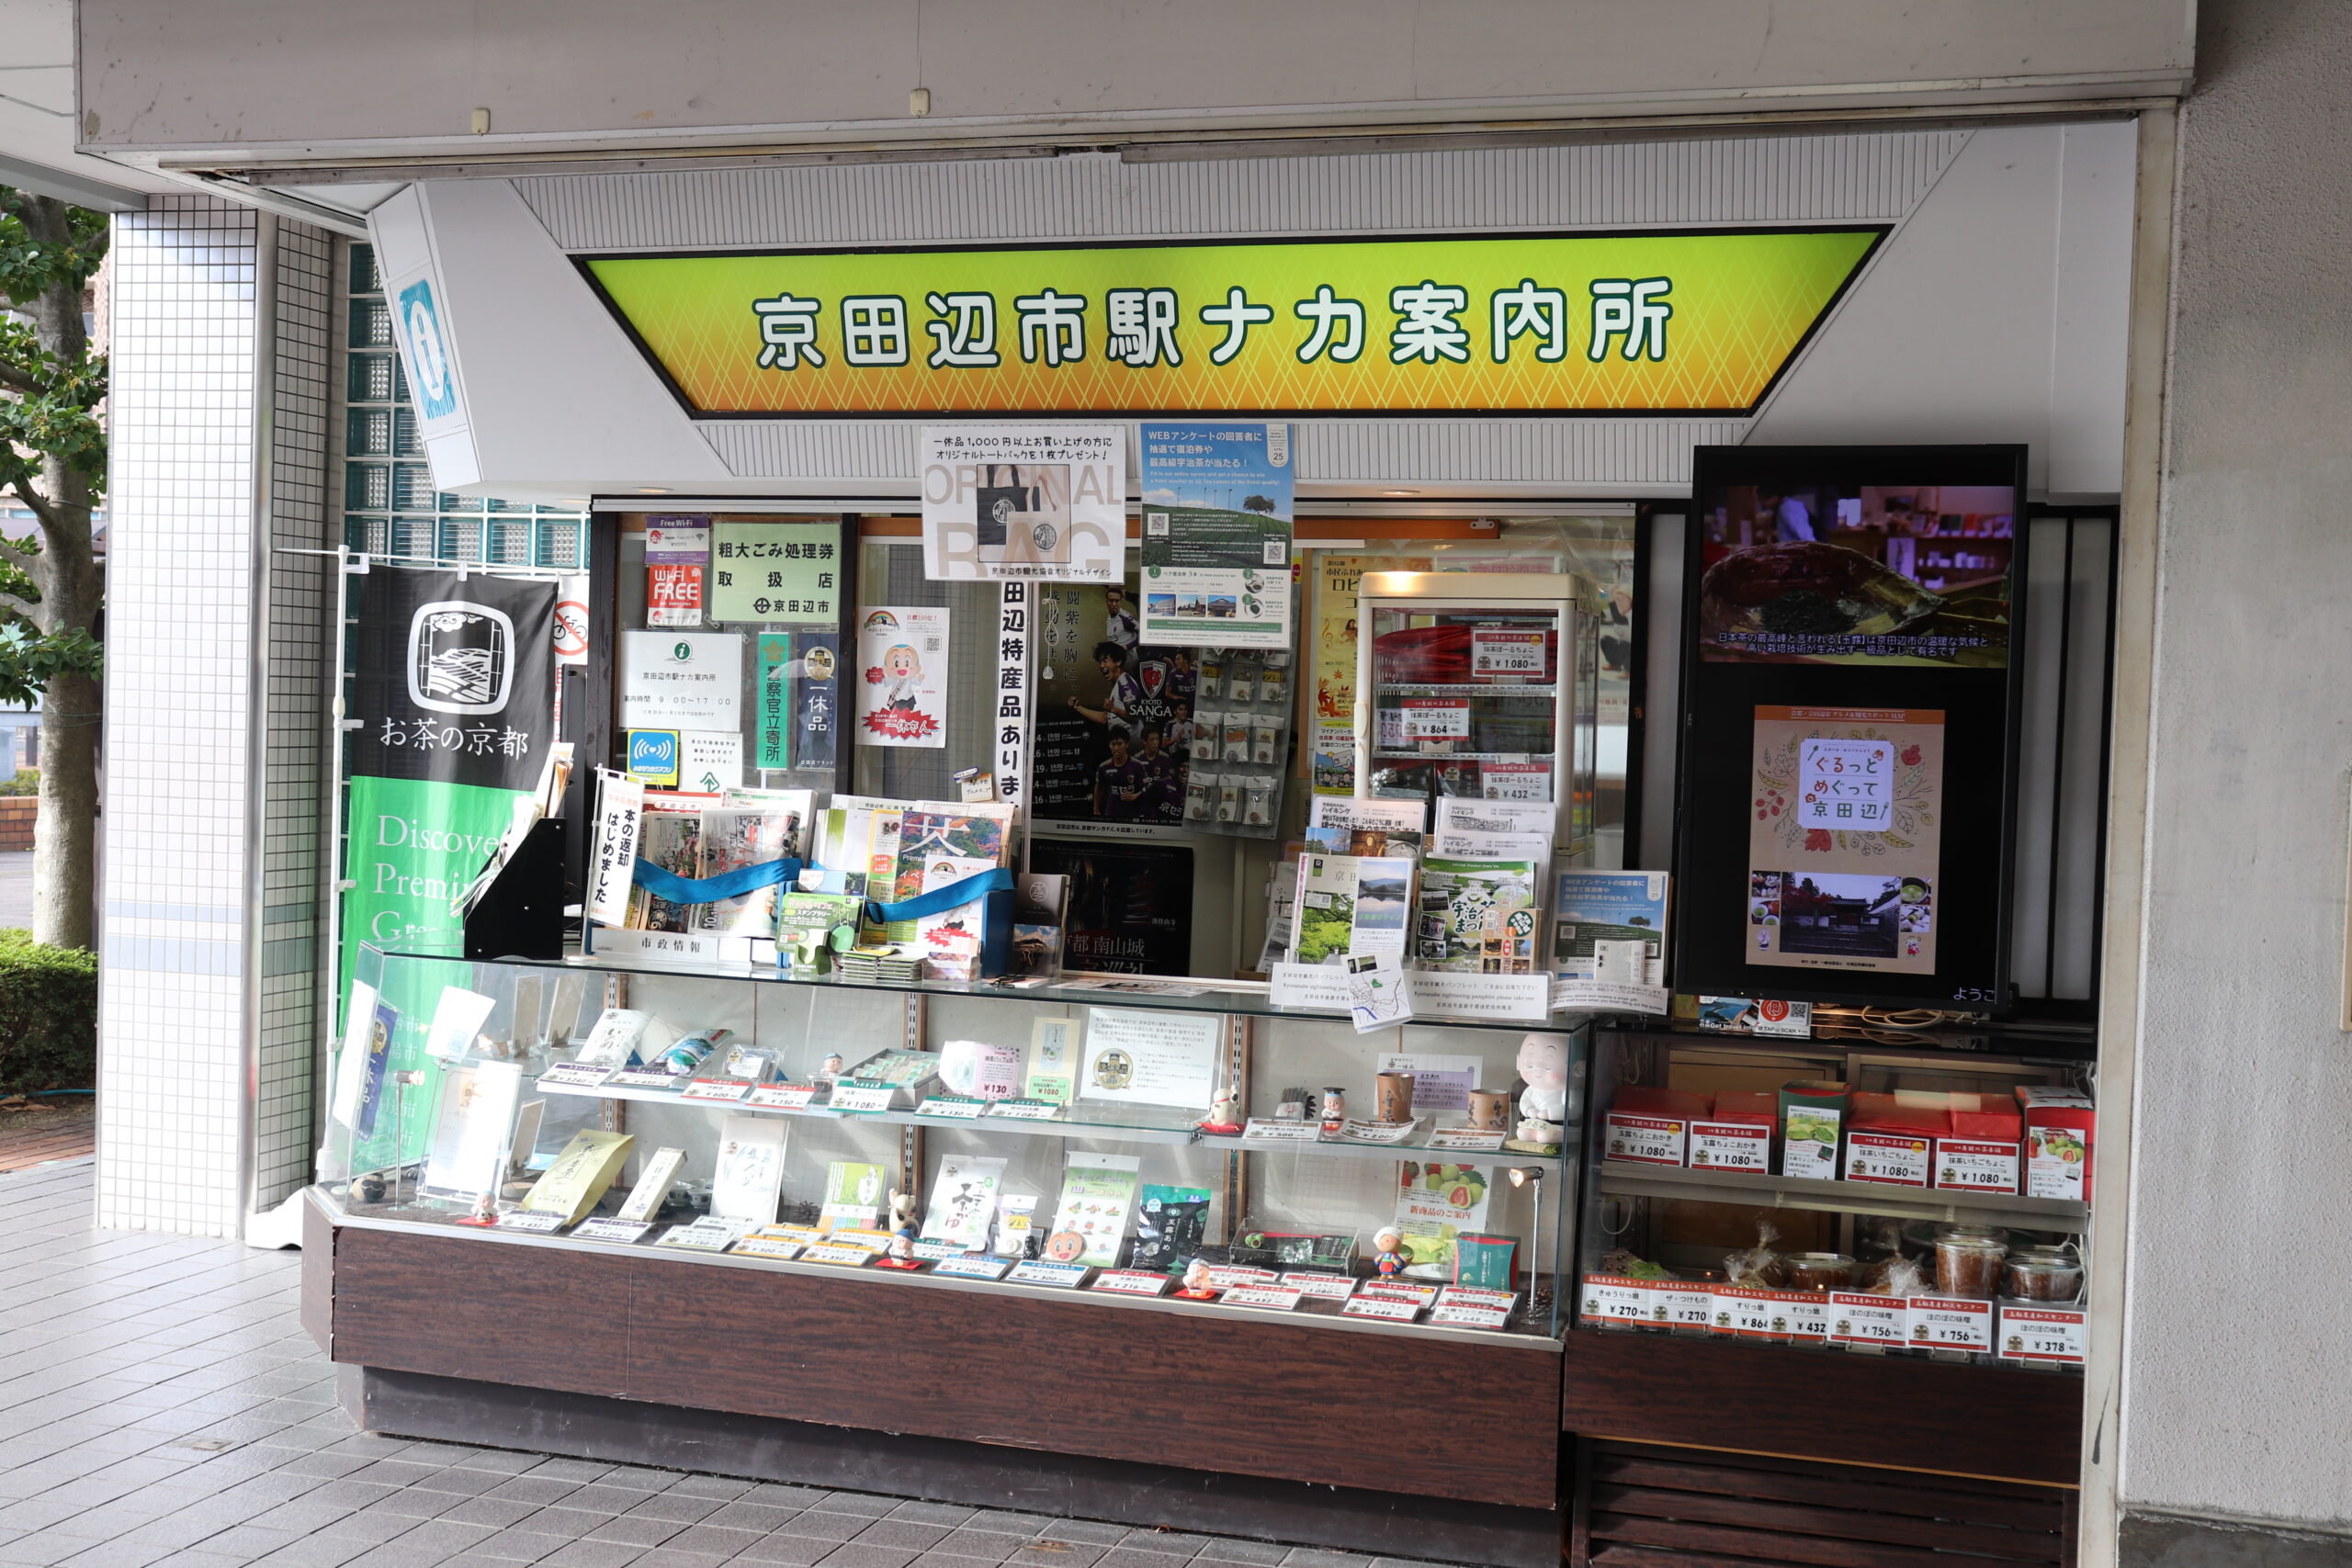 Kyotanabe City Station Information Center